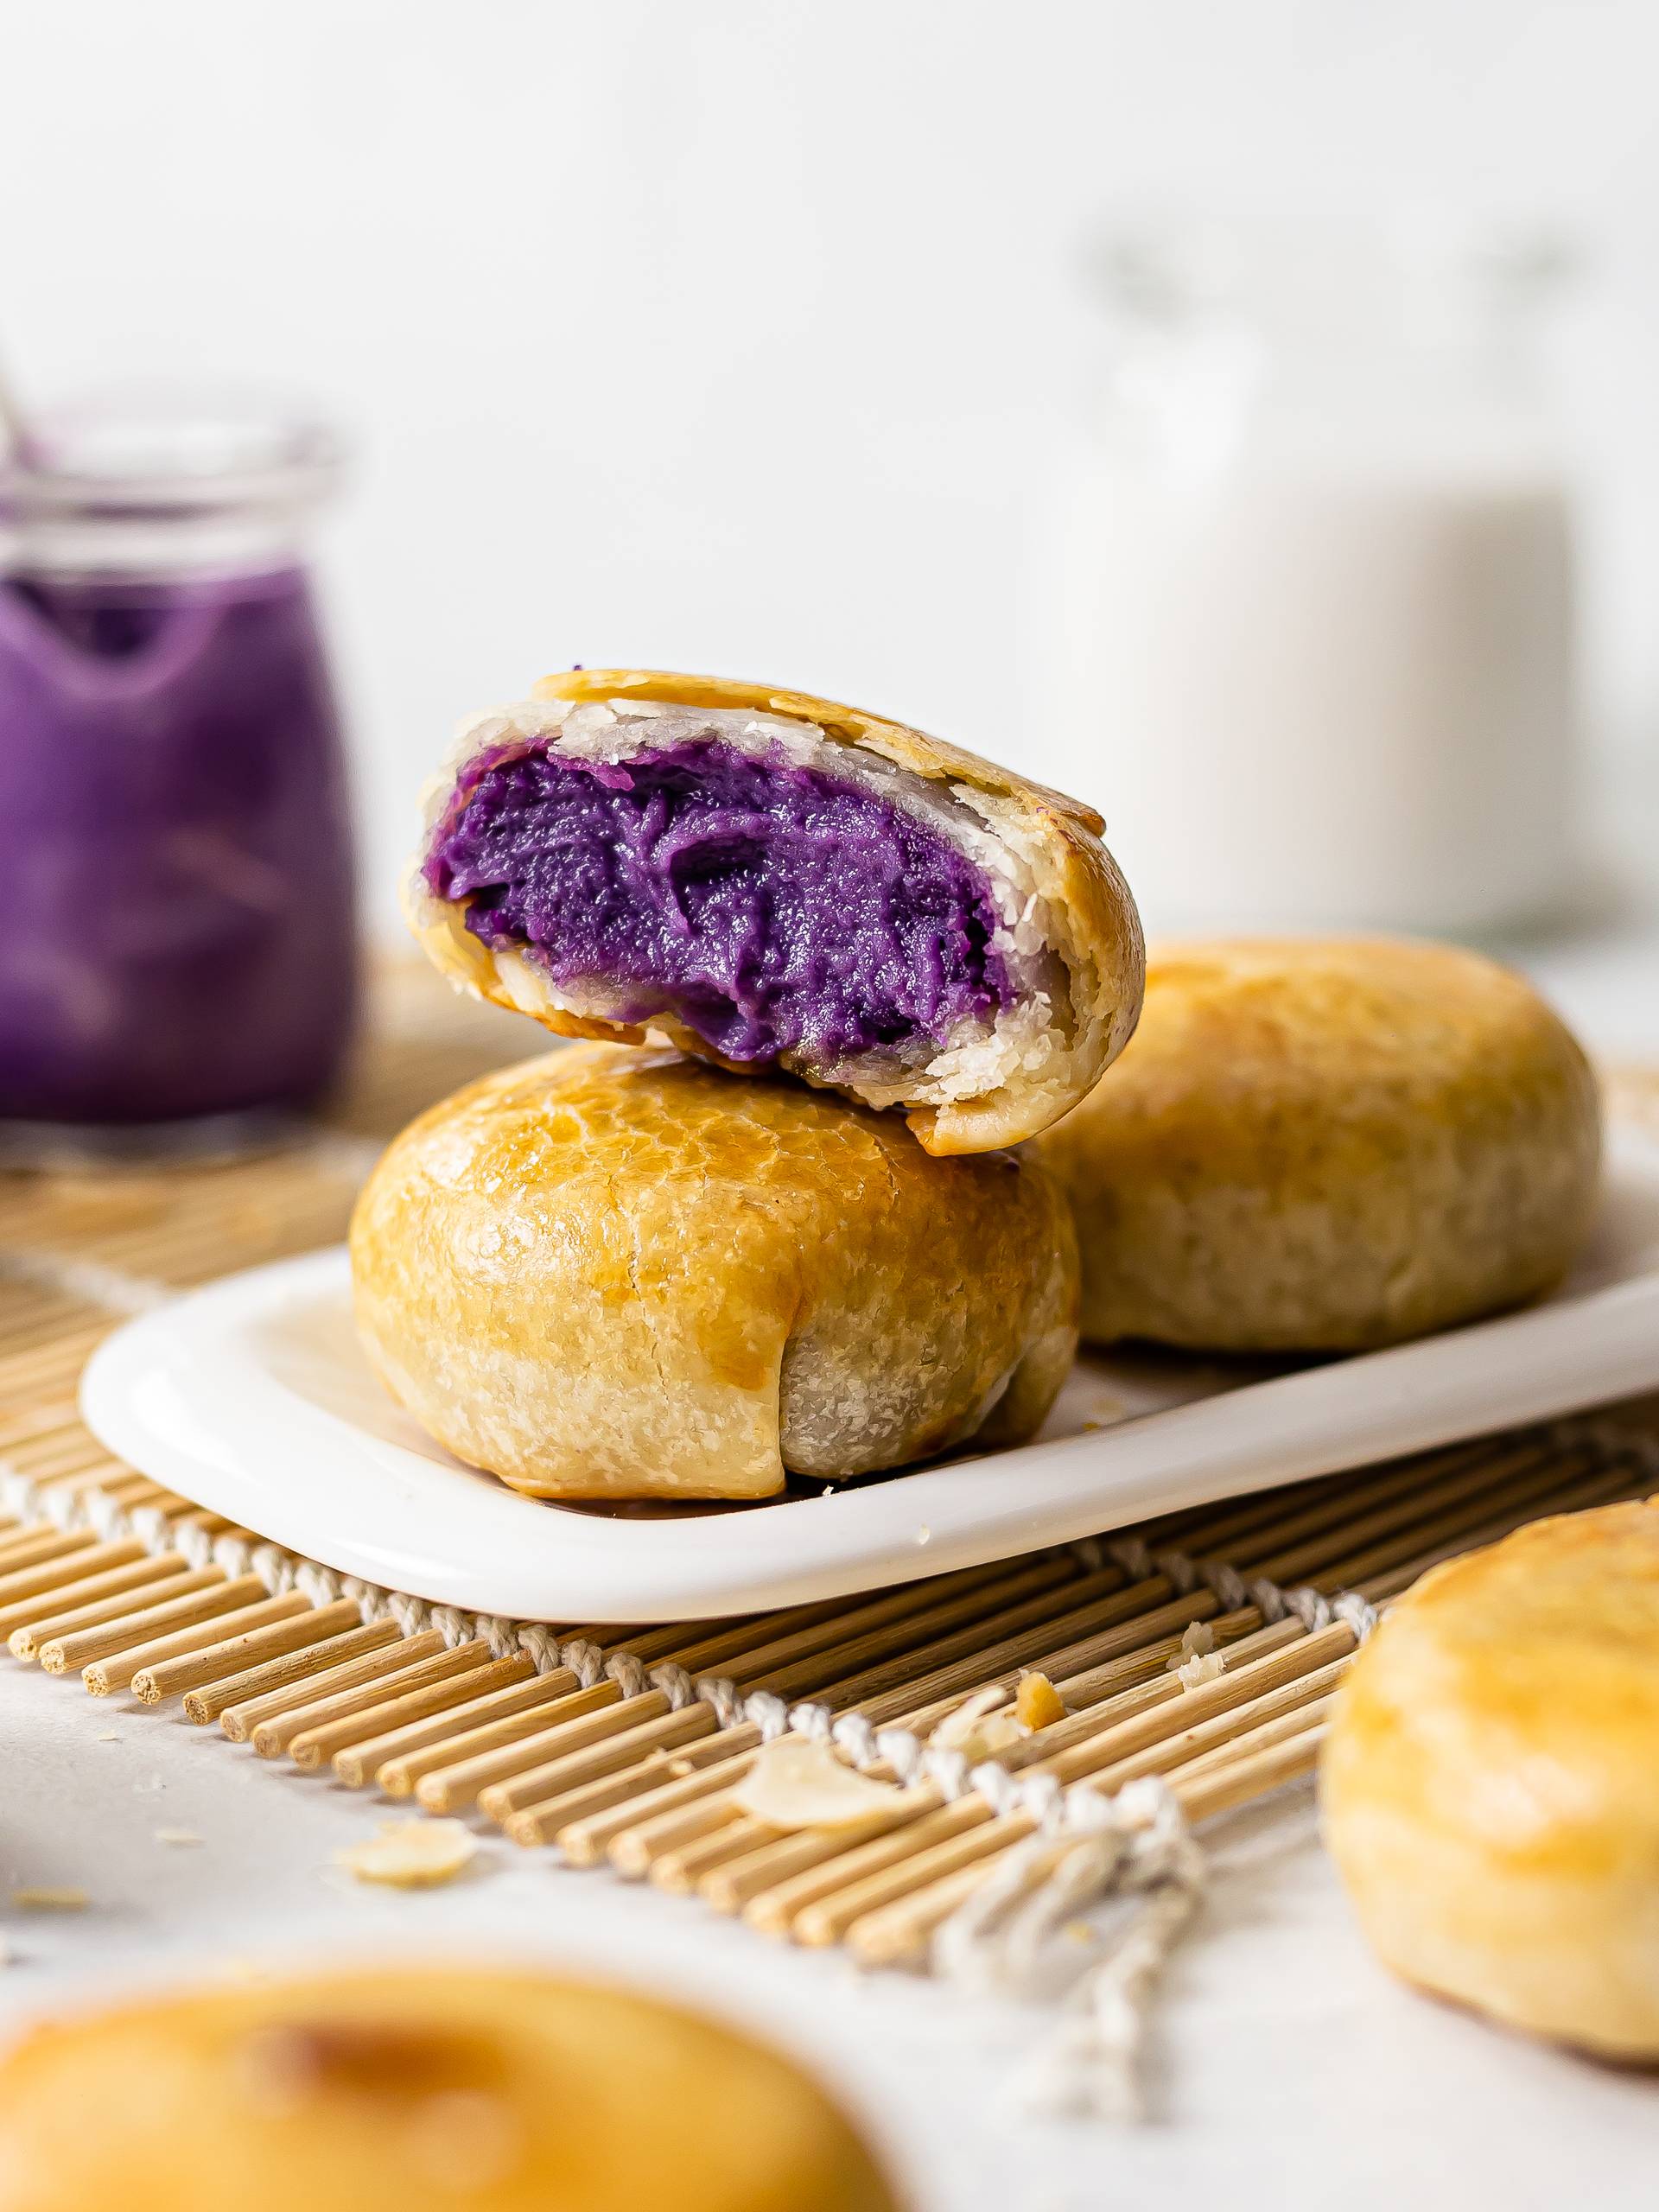 Ube Hopia Cakes (Filipino Purple Yam Pastries)